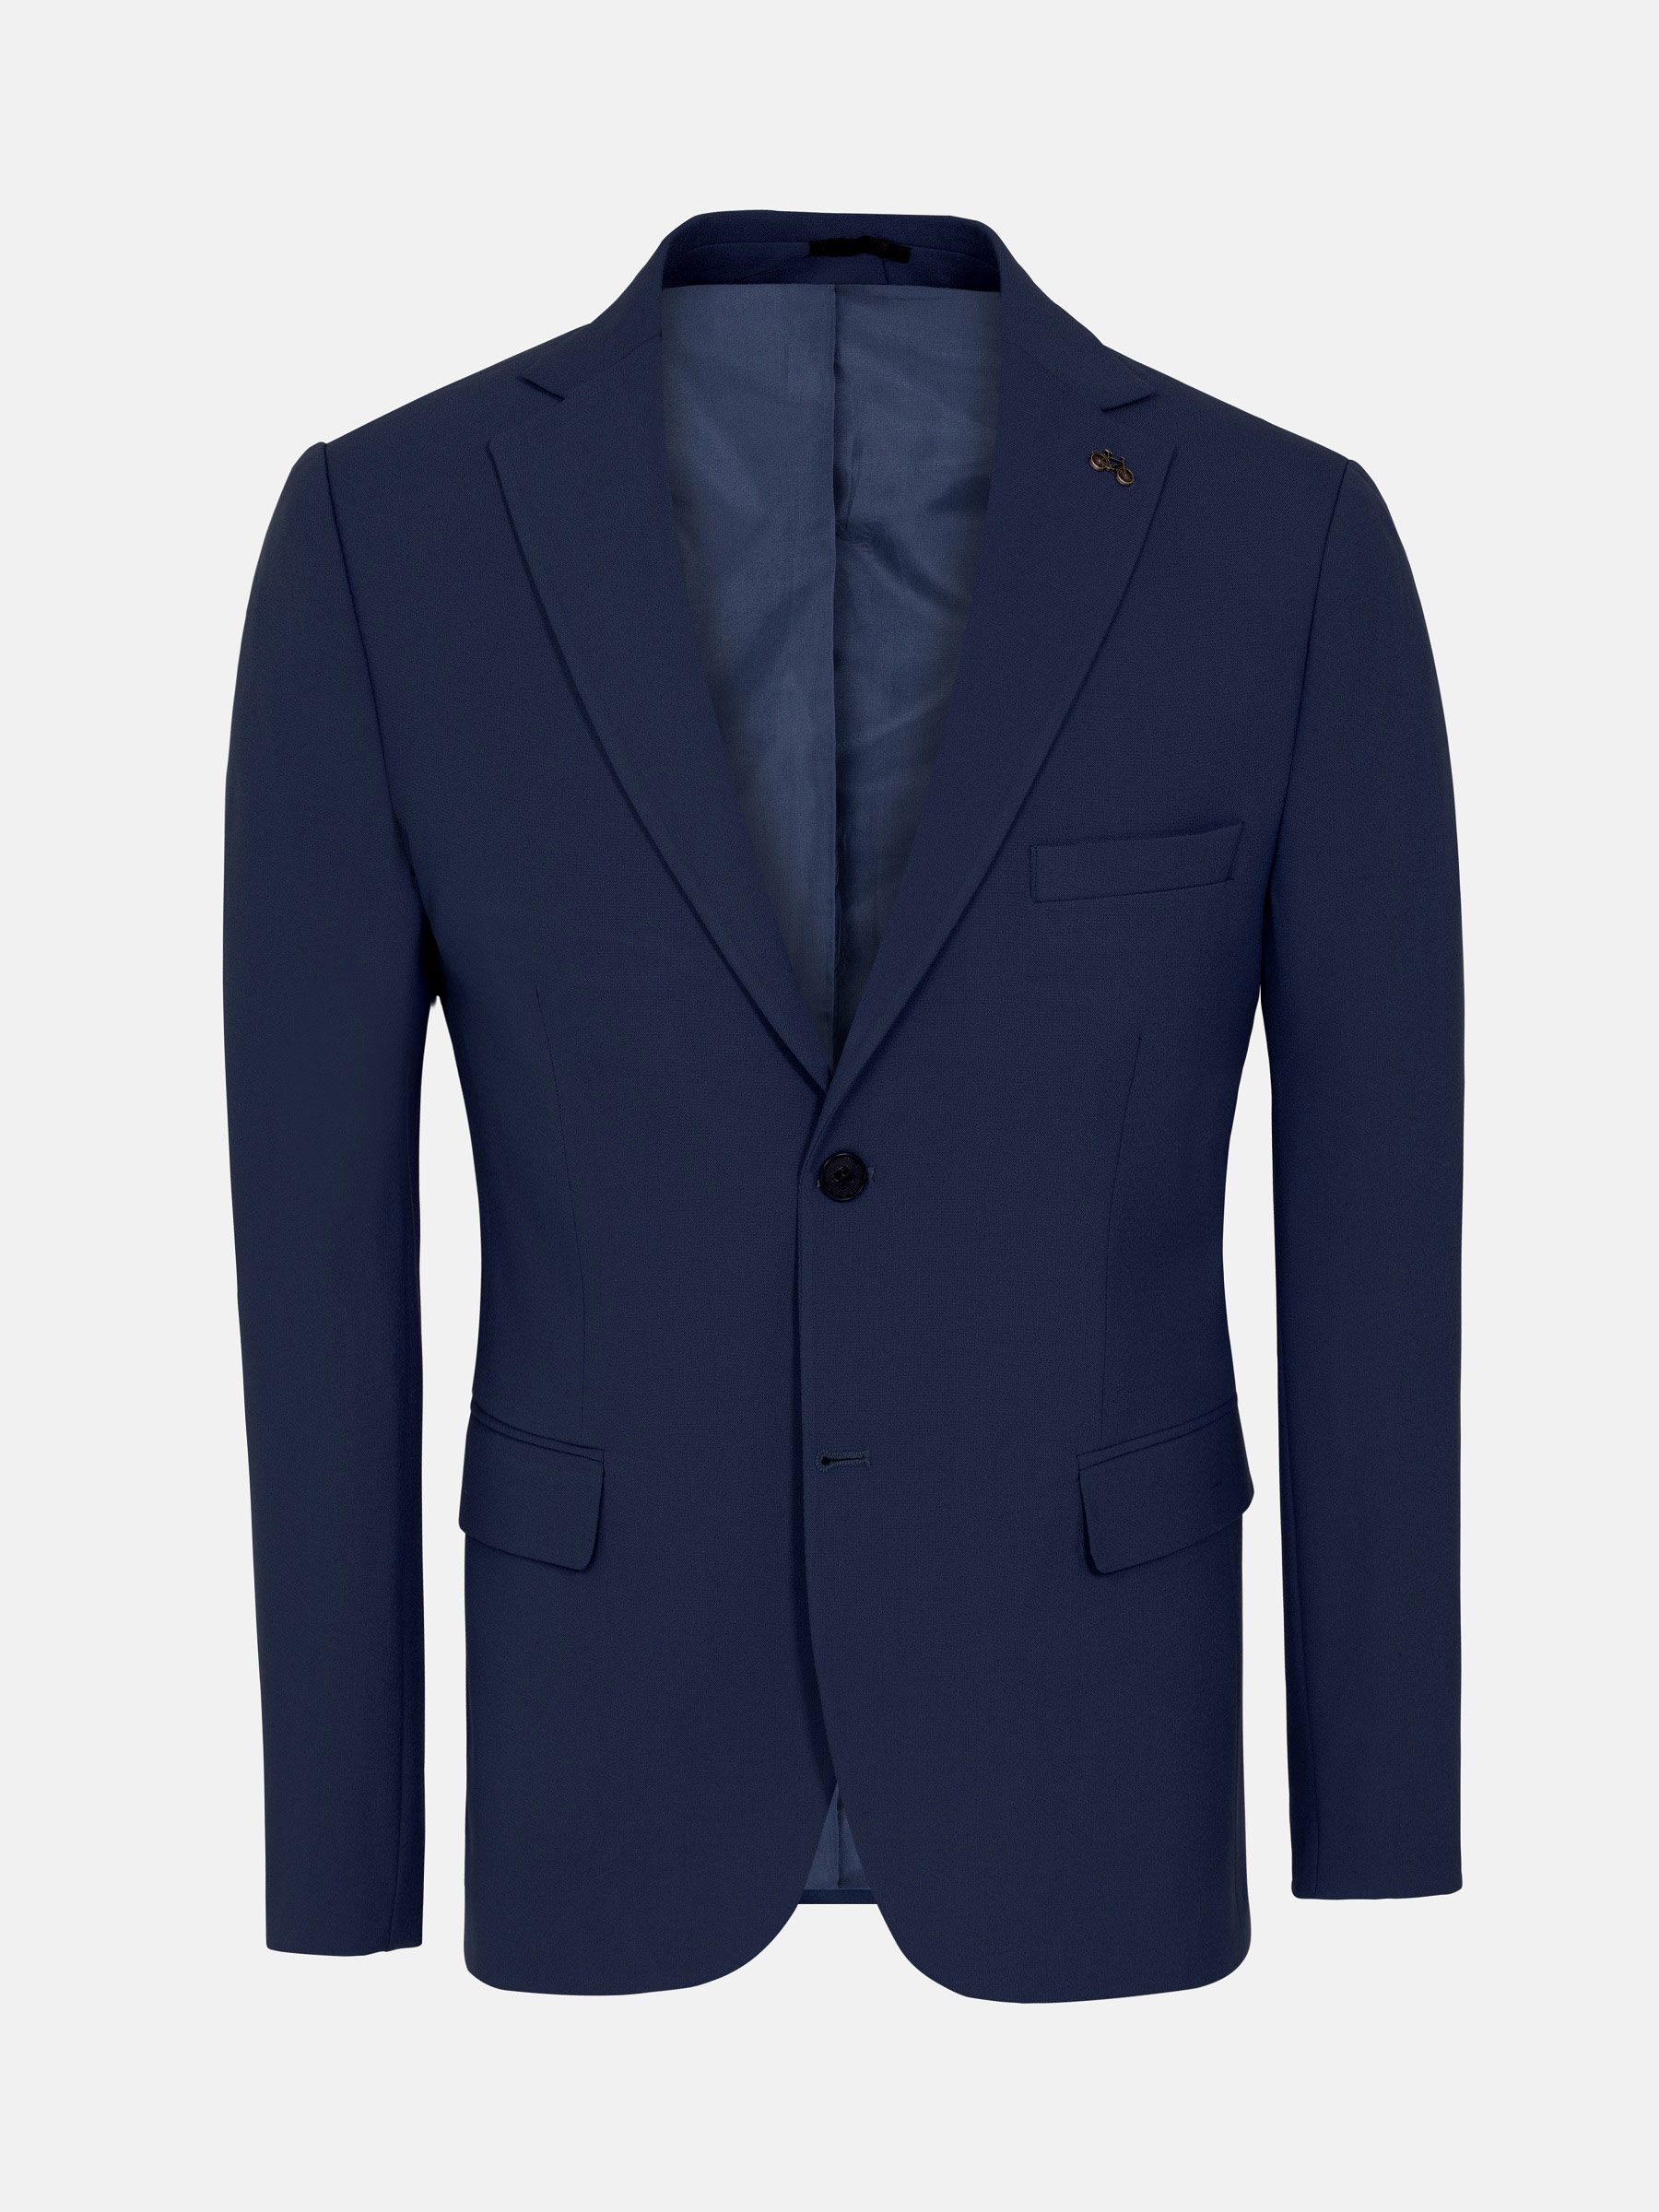 Men's slim fit textured blazer- Men's blazers- Men's textured blazers- Textured slim fit jackets